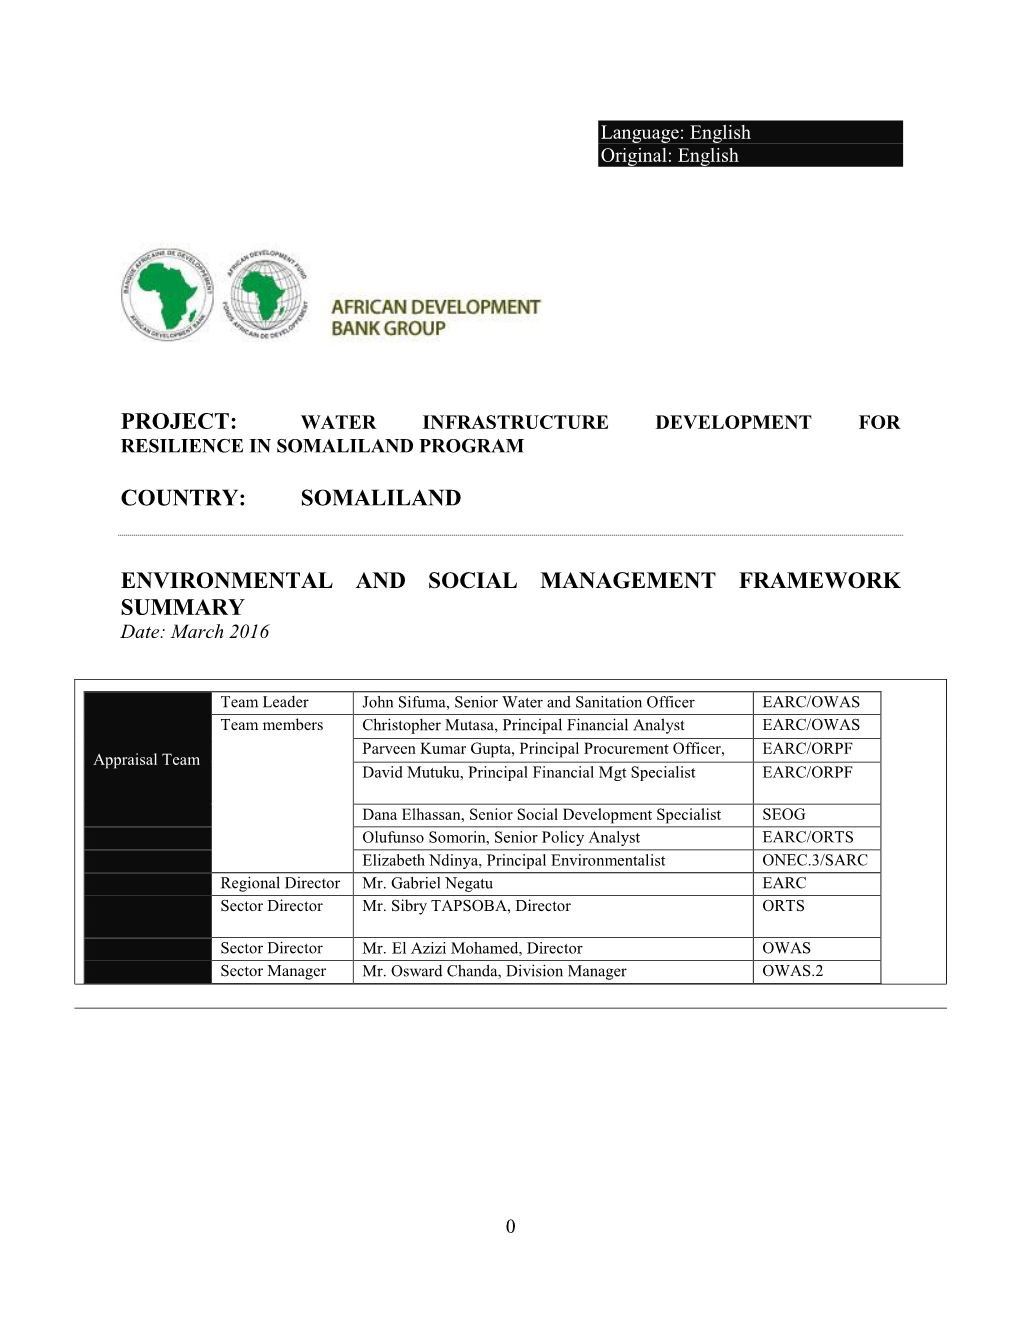 Project: Country: Somaliland Environmental and Social